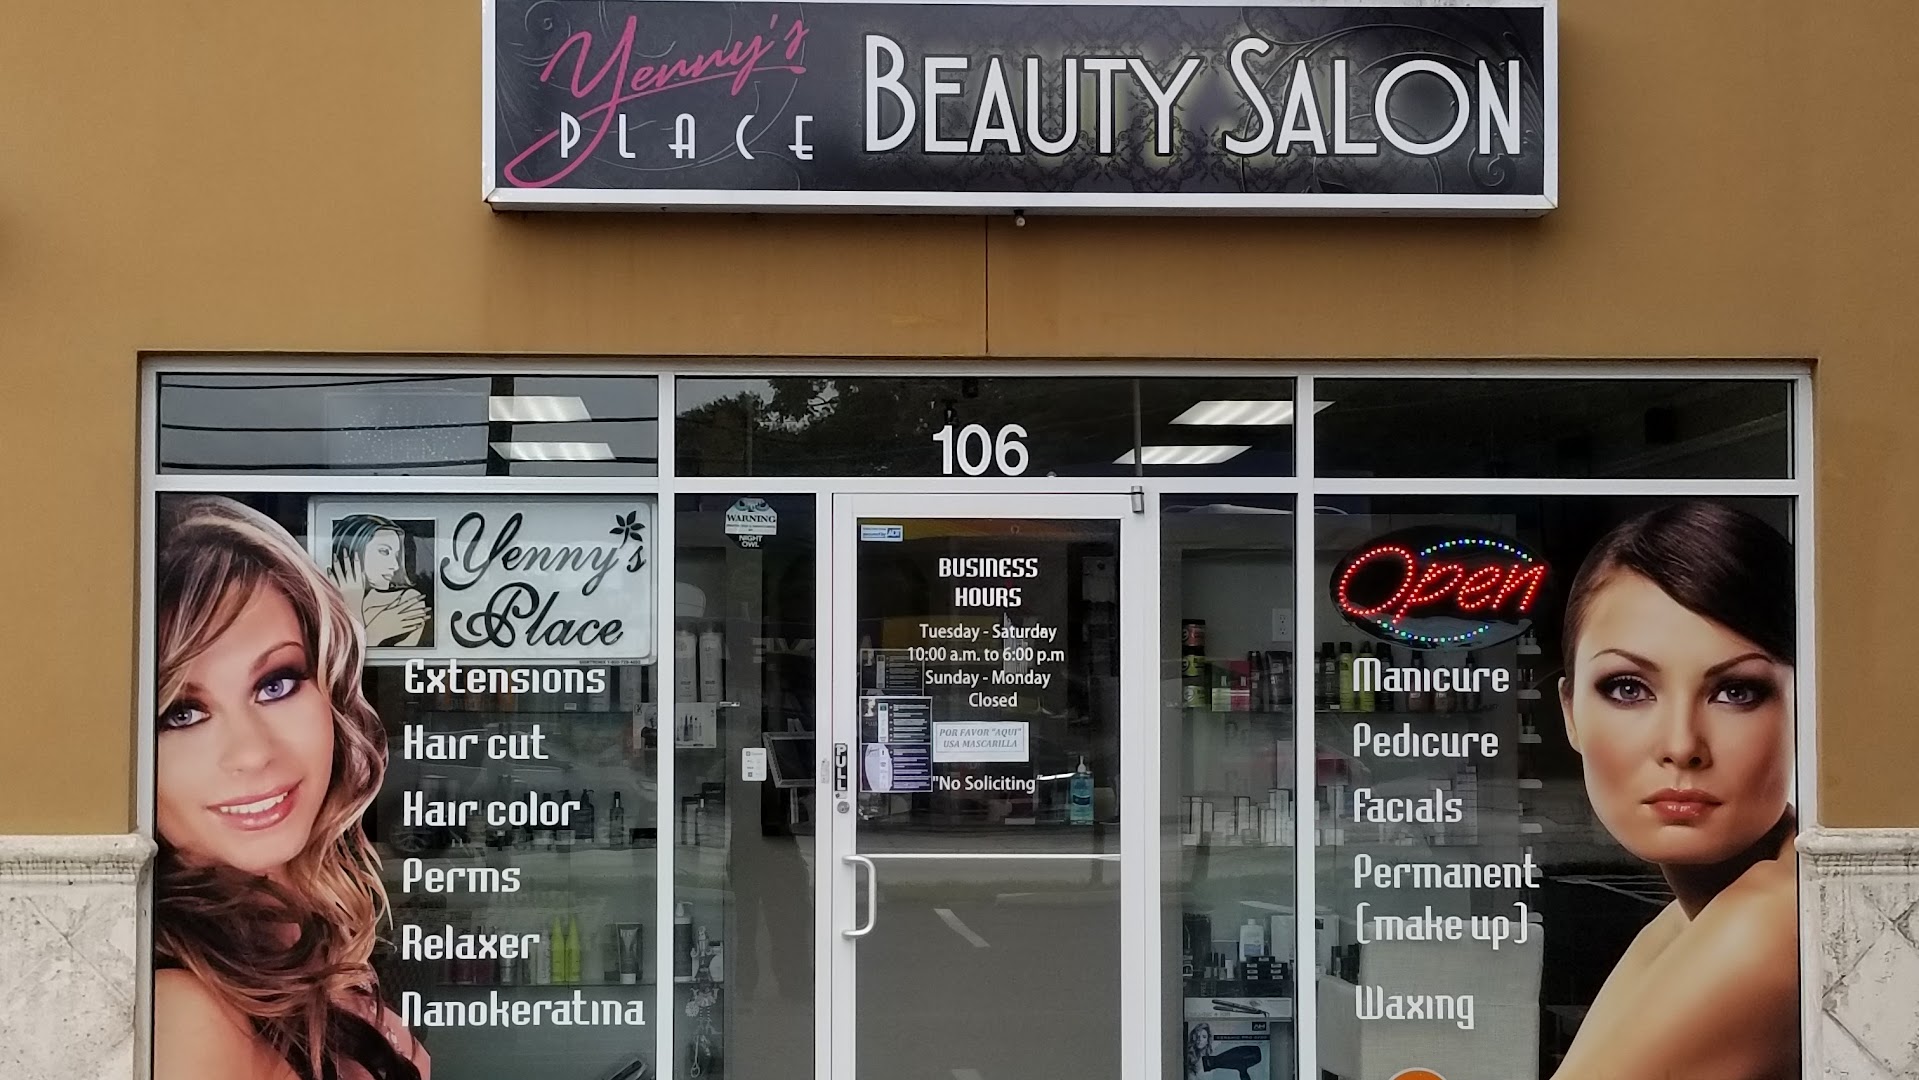 Yenny's Place Beauty Salon and Spa